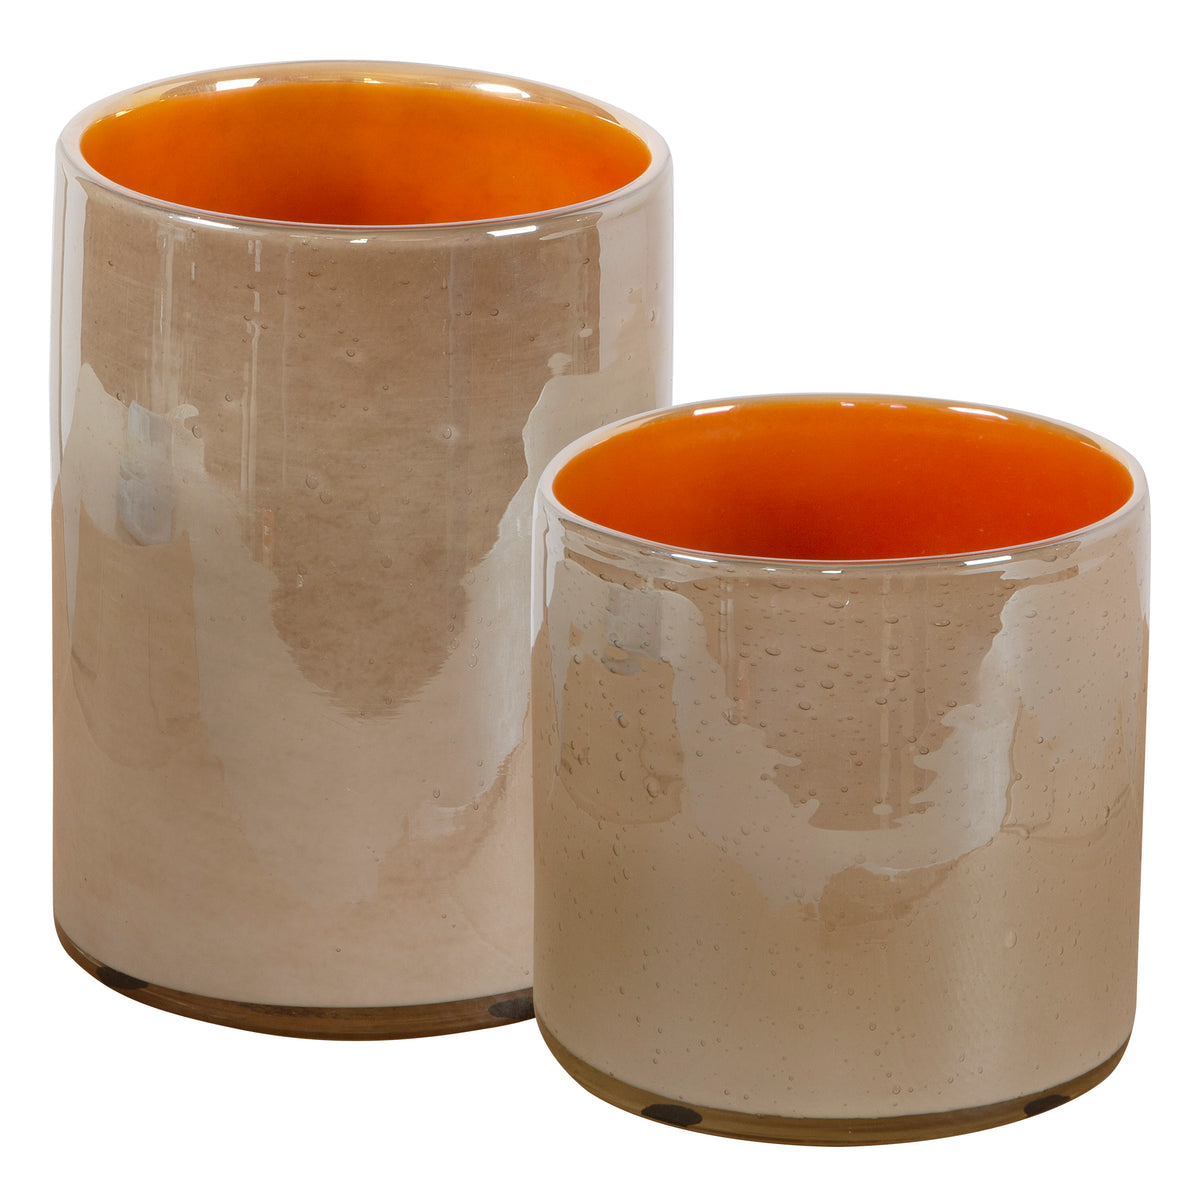 Tangelo Beige Orange Vases, S/2